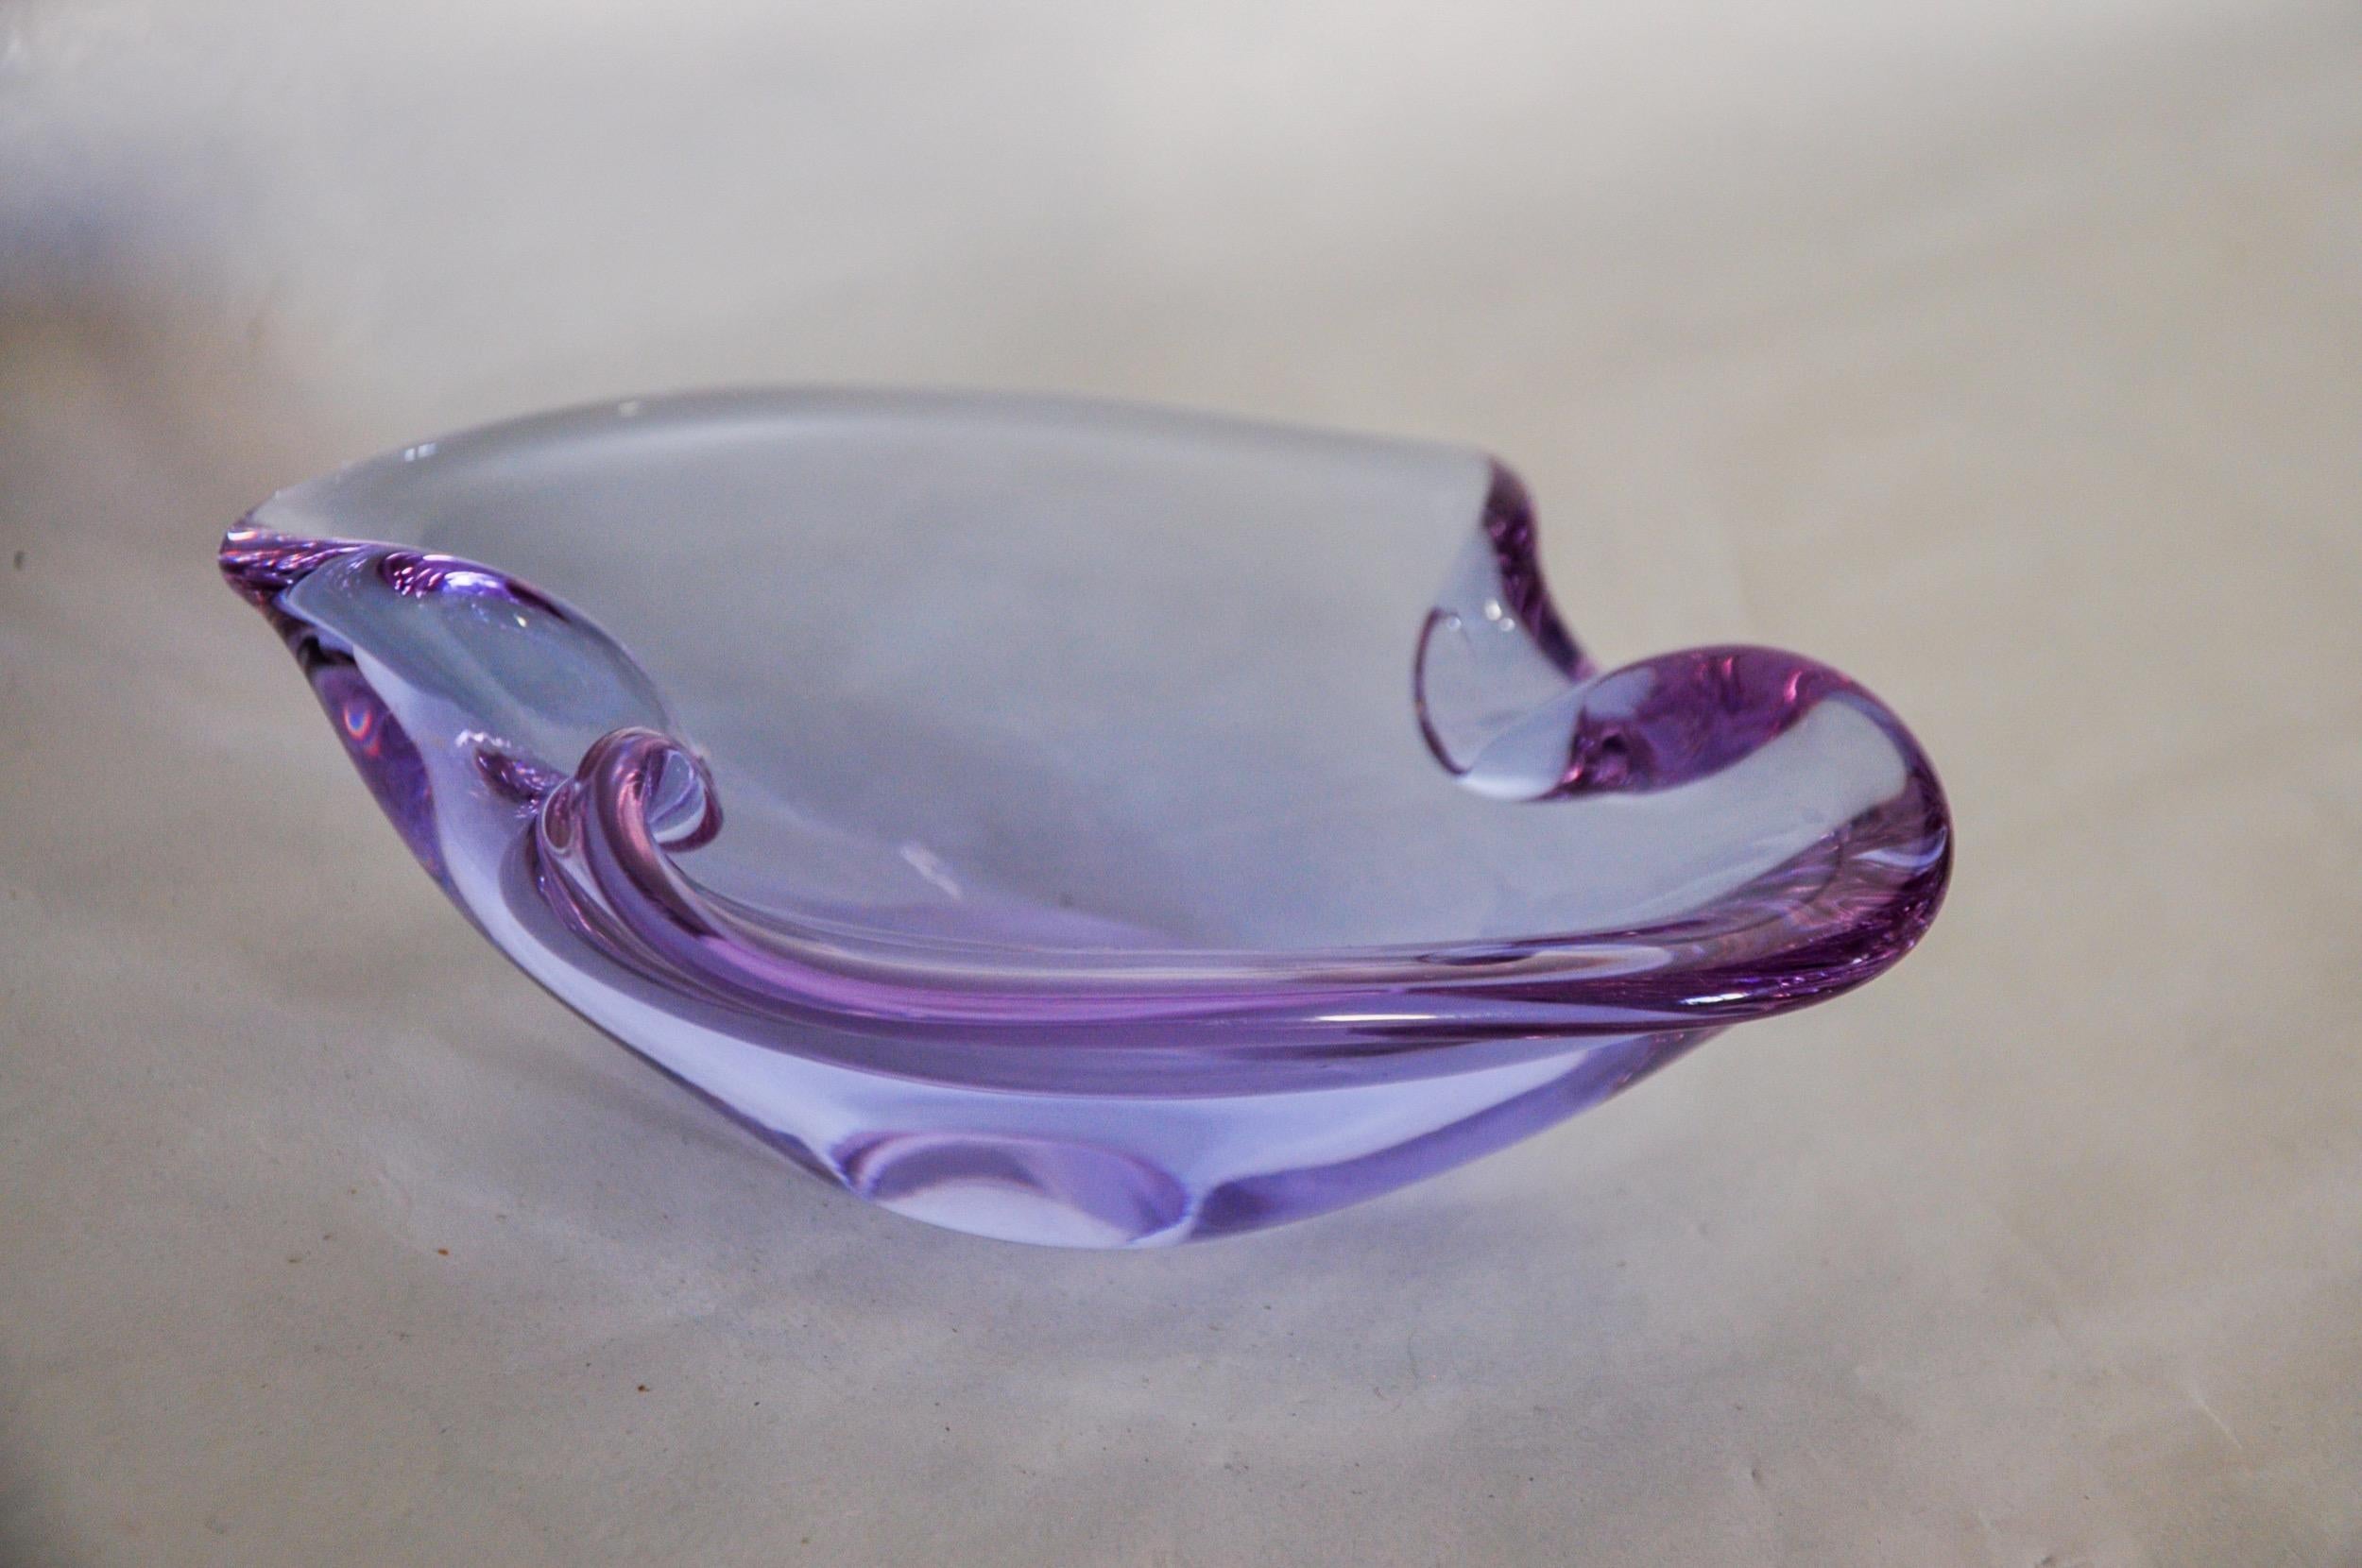 Superbe et rare cendrier violet Sommerso conçu et fabriqué pour Seguso à Murano dans les années 1970. Verre artisanal selon la technique Sommerso (superposition de couches de verre en fusion). Magnifique objet de collection et de décoration. Parfait